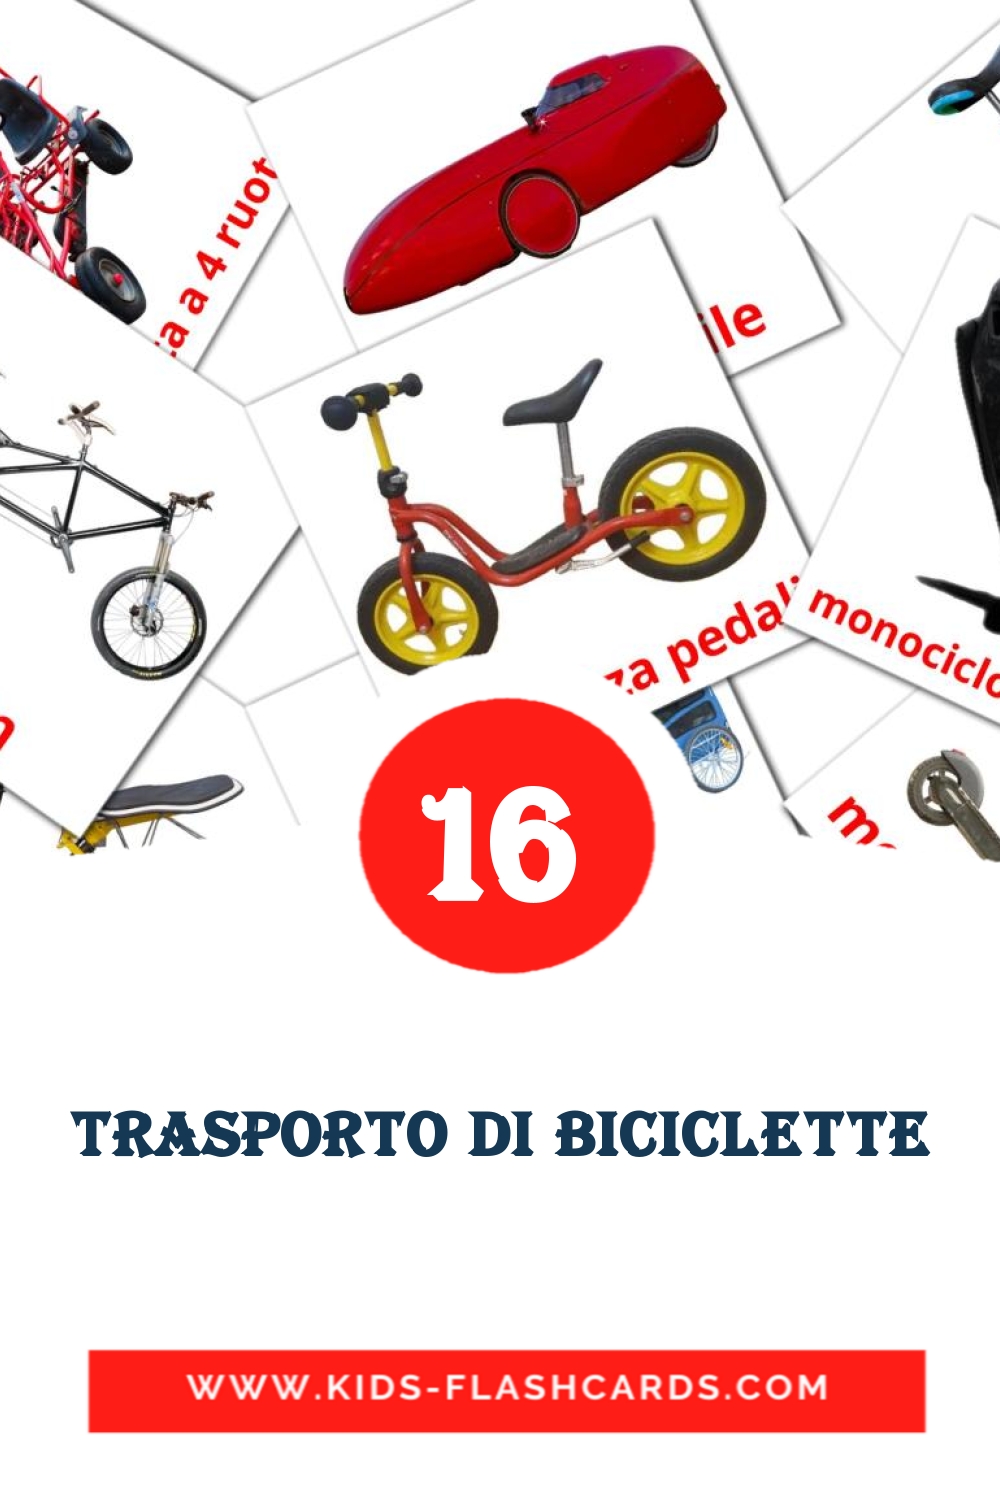 16 Trasporto di biciclette fotokaarten voor kleuters in het italiaanse